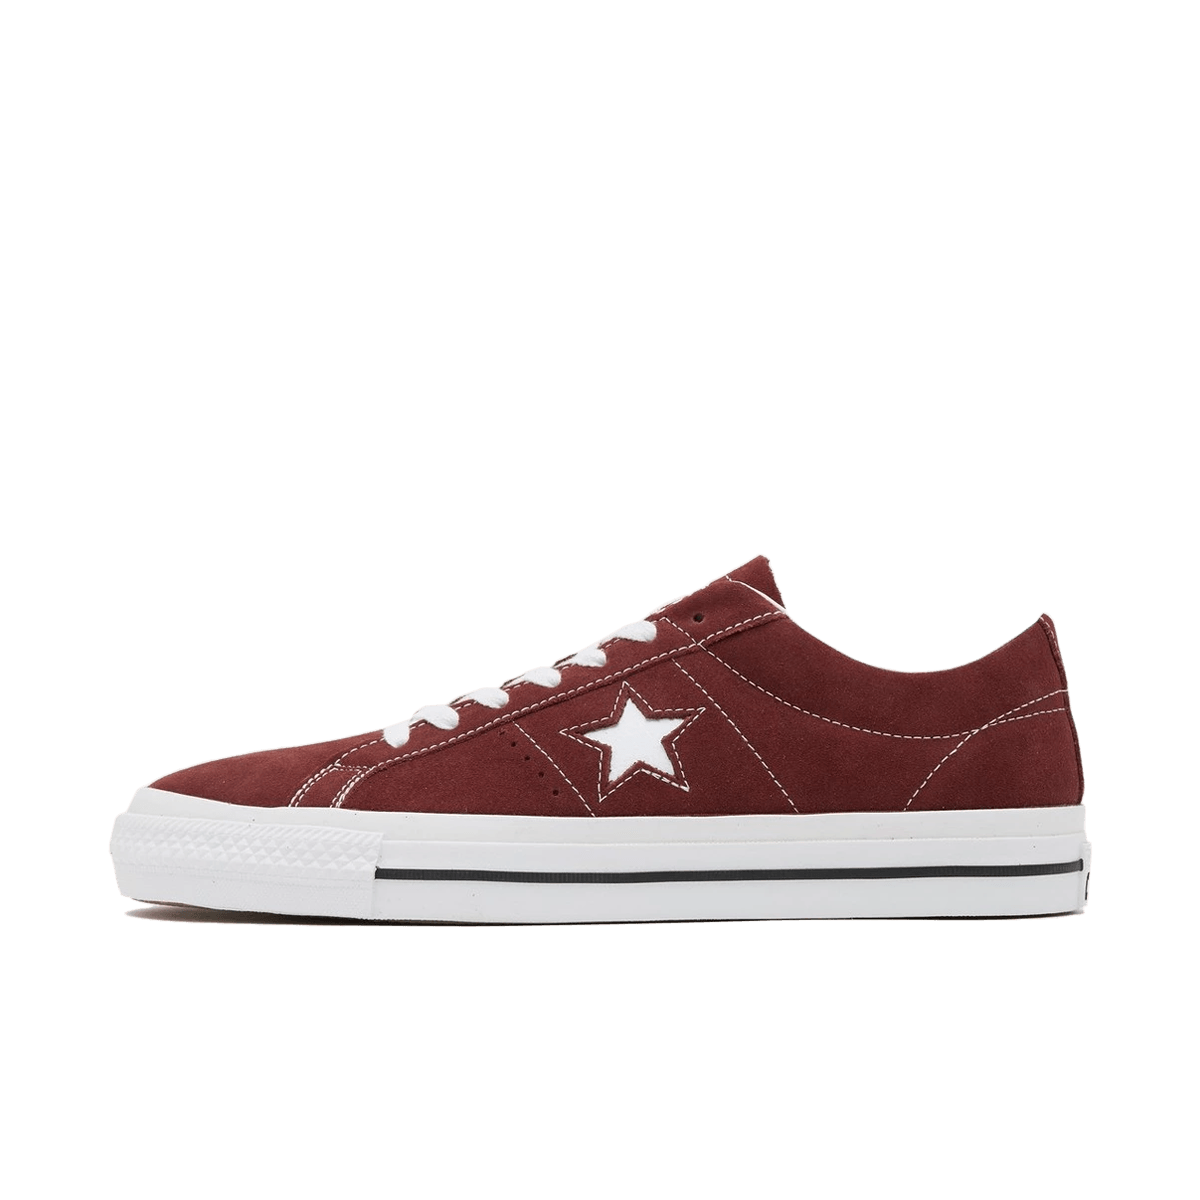 Converse One Star Pro  'Pueblo Brown' A07893C